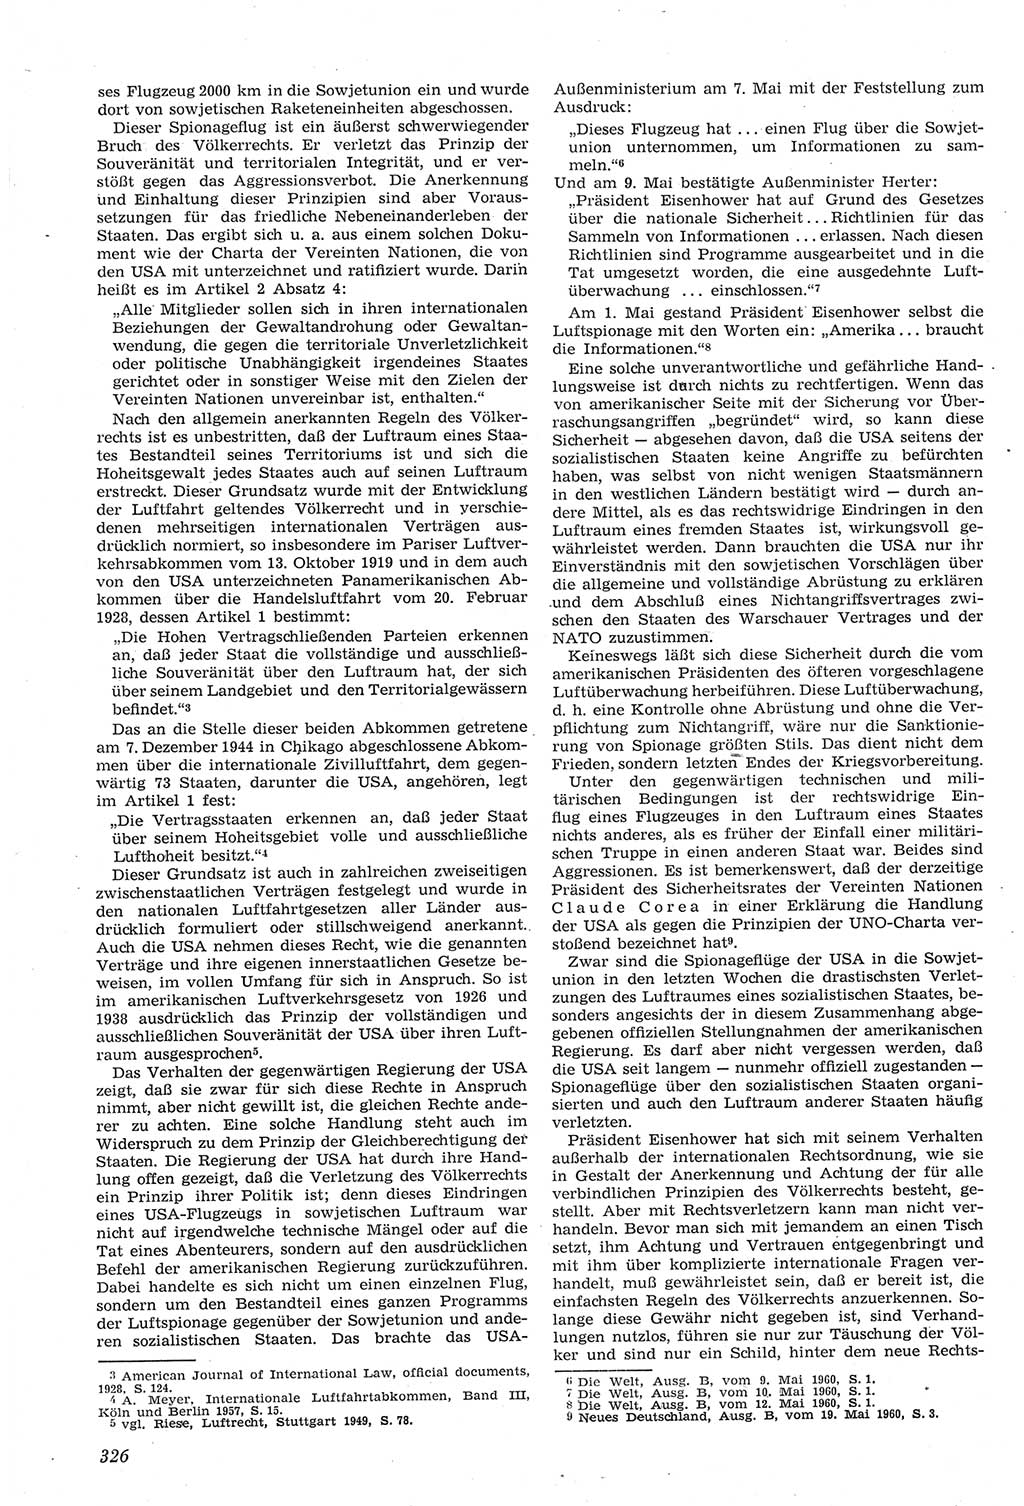 Neue Justiz (NJ), Zeitschrift für Recht und Rechtswissenschaft [Deutsche Demokratische Republik (DDR)], 14. Jahrgang 1960, Seite 326 (NJ DDR 1960, S. 326)